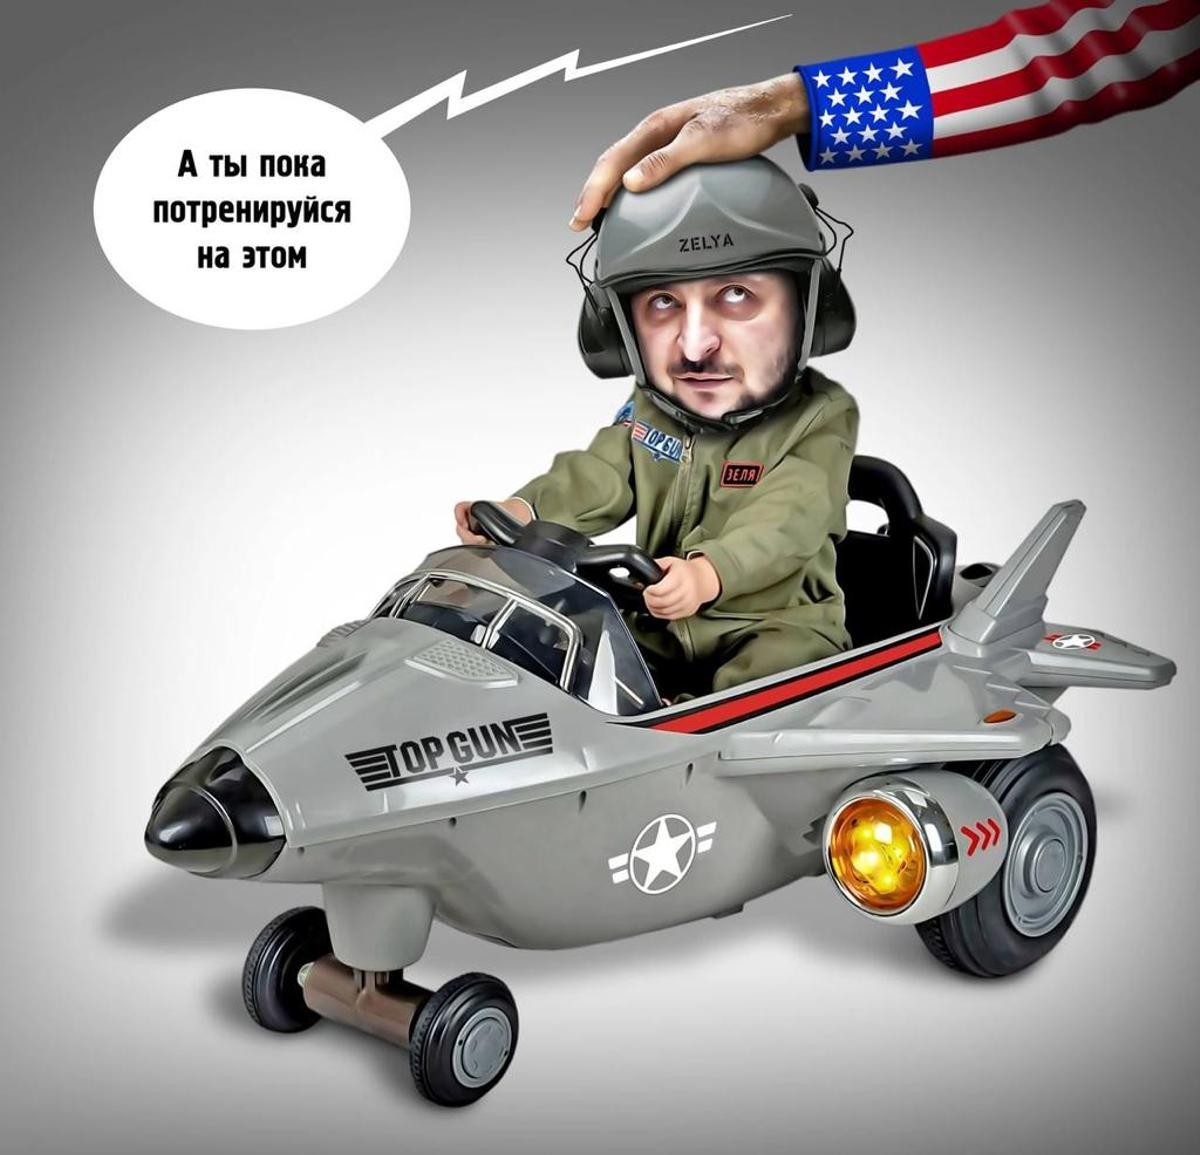 Caricatura del ucraniano Zelenski emitida por Wagner. La compañía llama a este tipo de mensajes de internet &quot;memes de combate&quot;.